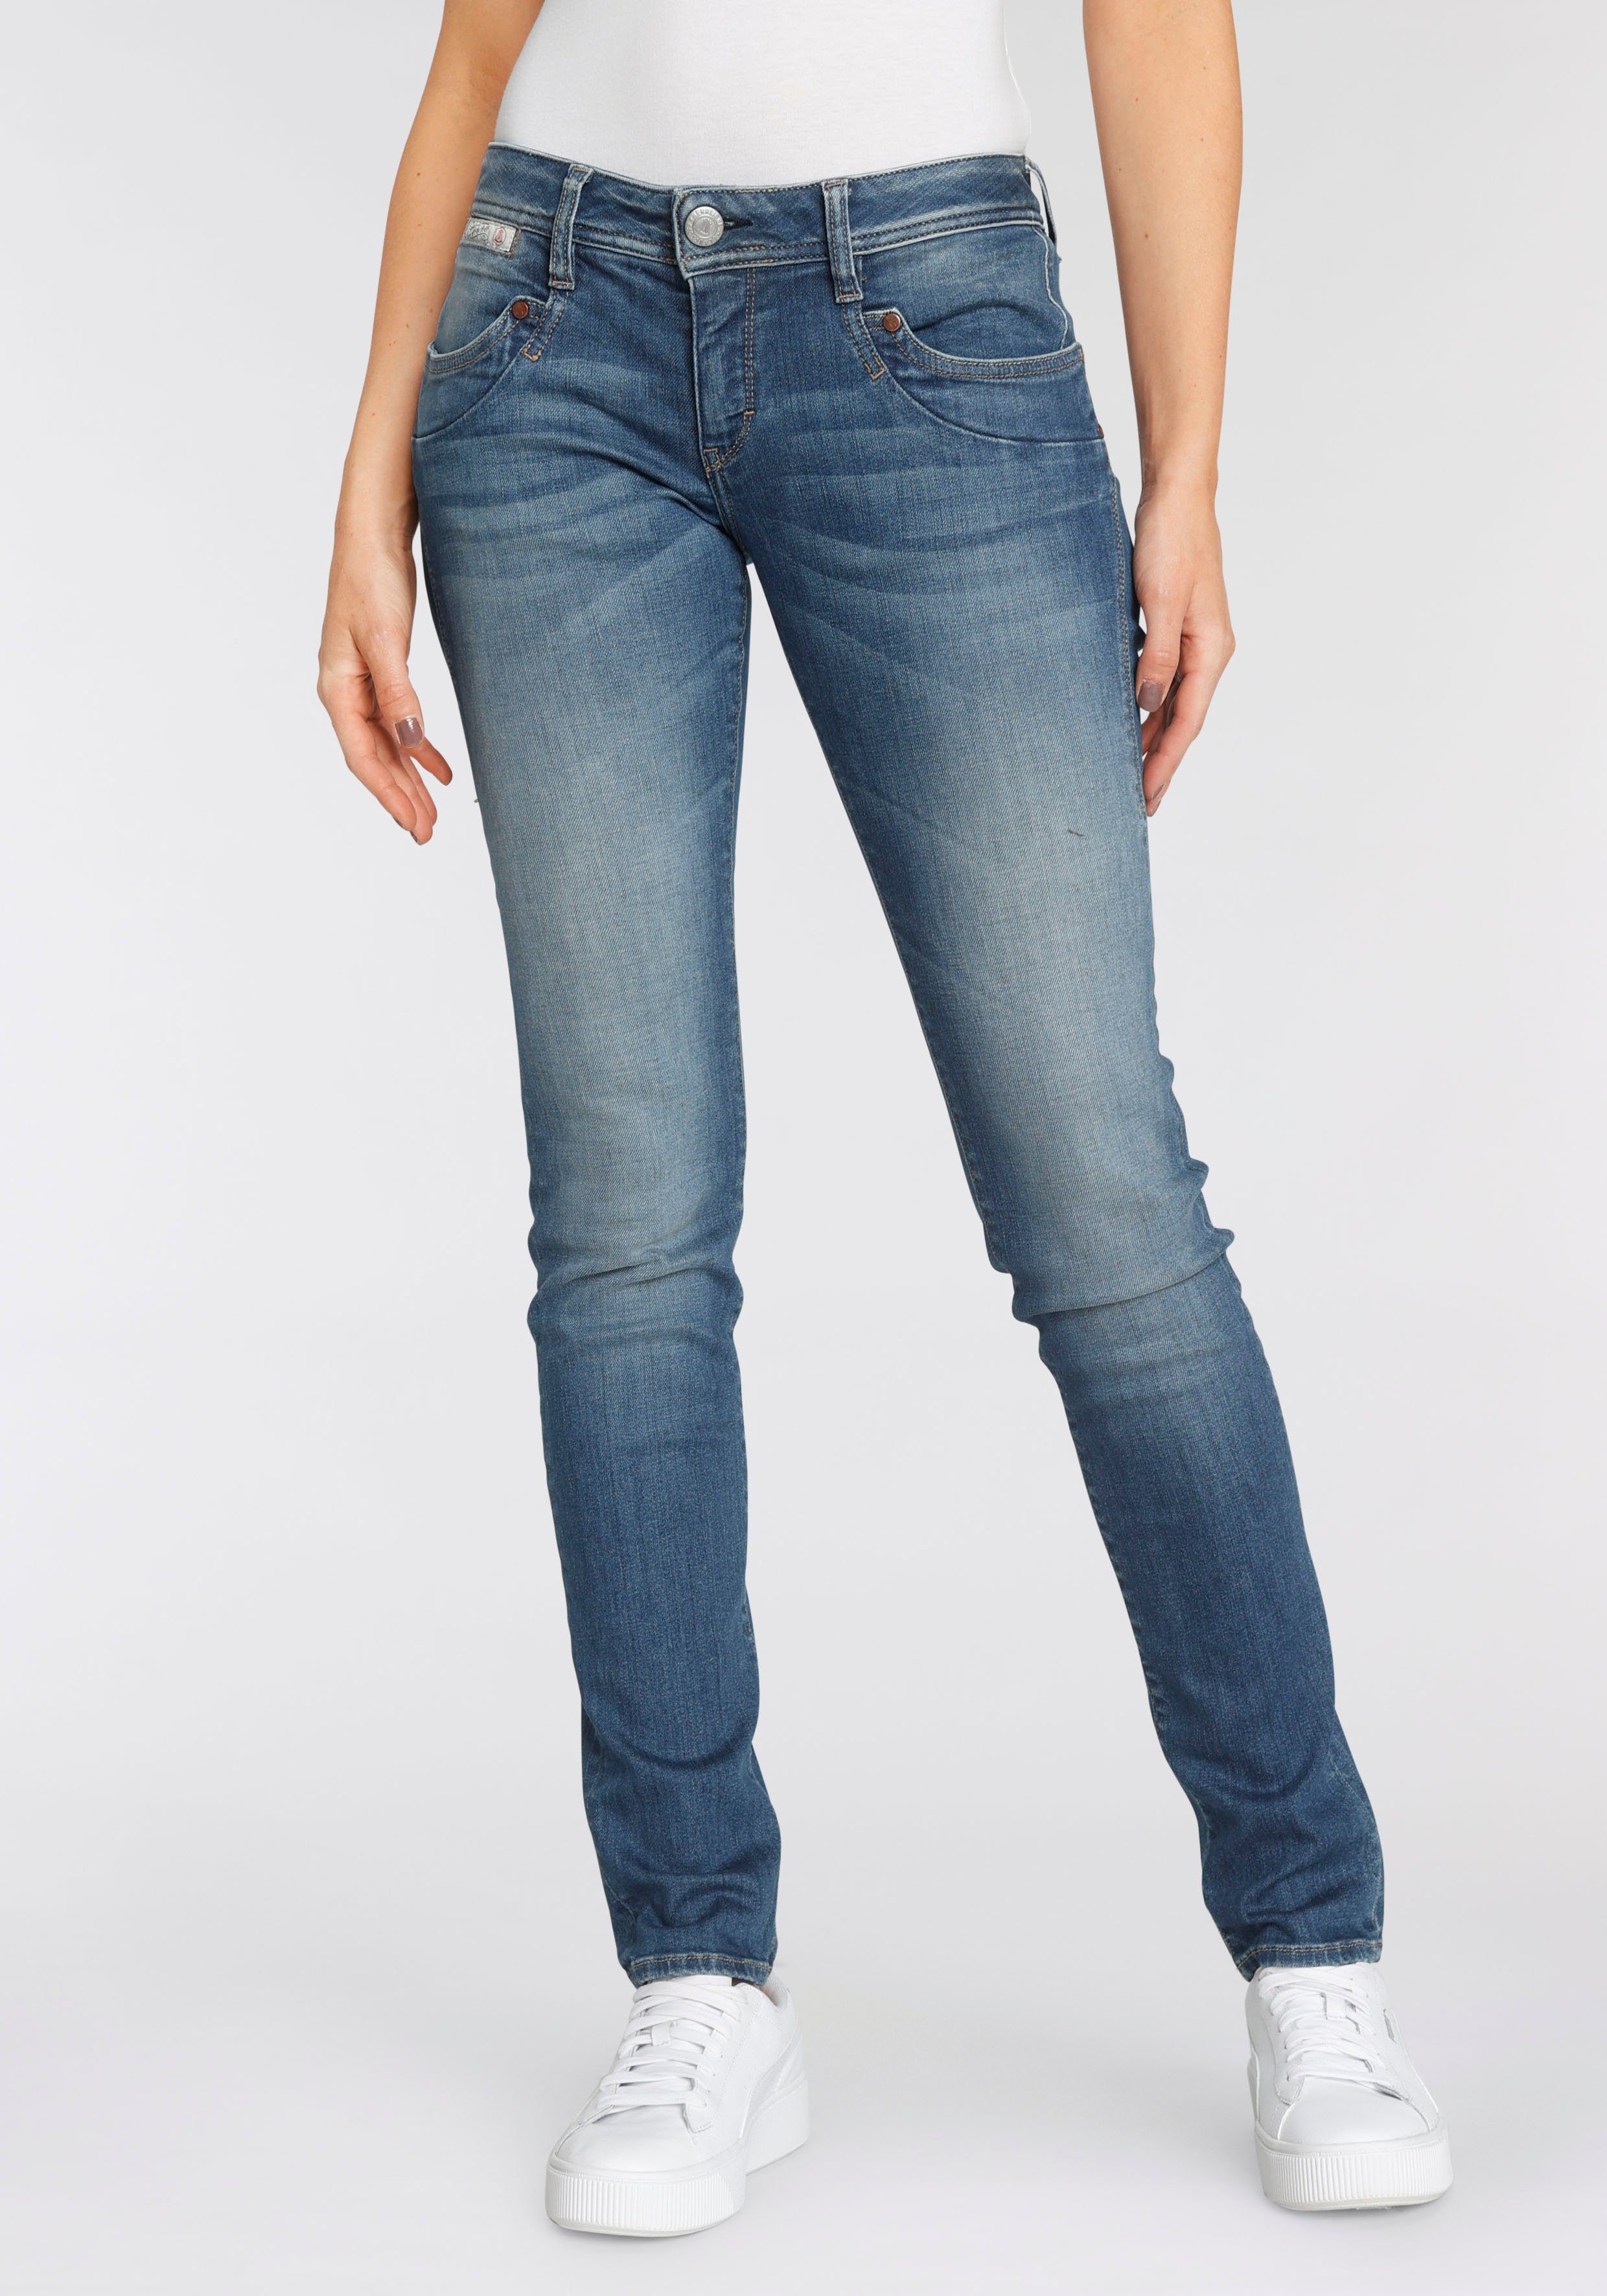 Herrlicher Slim-fit-Jeans PIPER SLIM umweltfreundlich dank Kitotex Technology ORGANIC